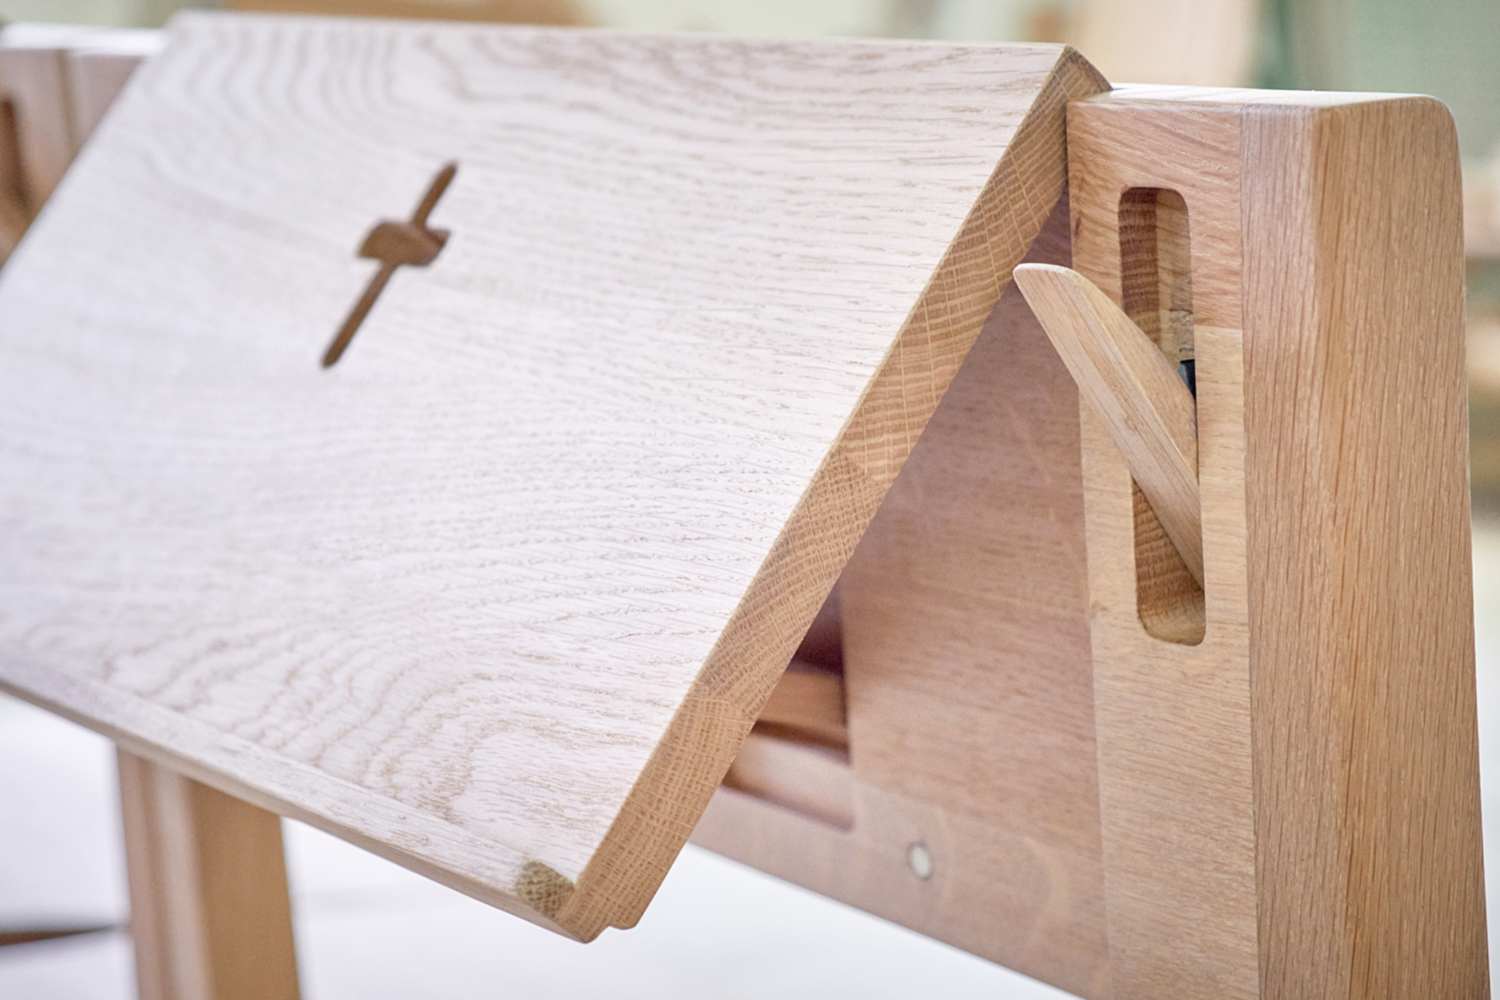 Kirchenstuhl ZOE aus Eichenholz, der mit dem Kreuz aus Eichenholz verbunden wird mit einem einziehbaren Bibelhalter und Taschenhalter.